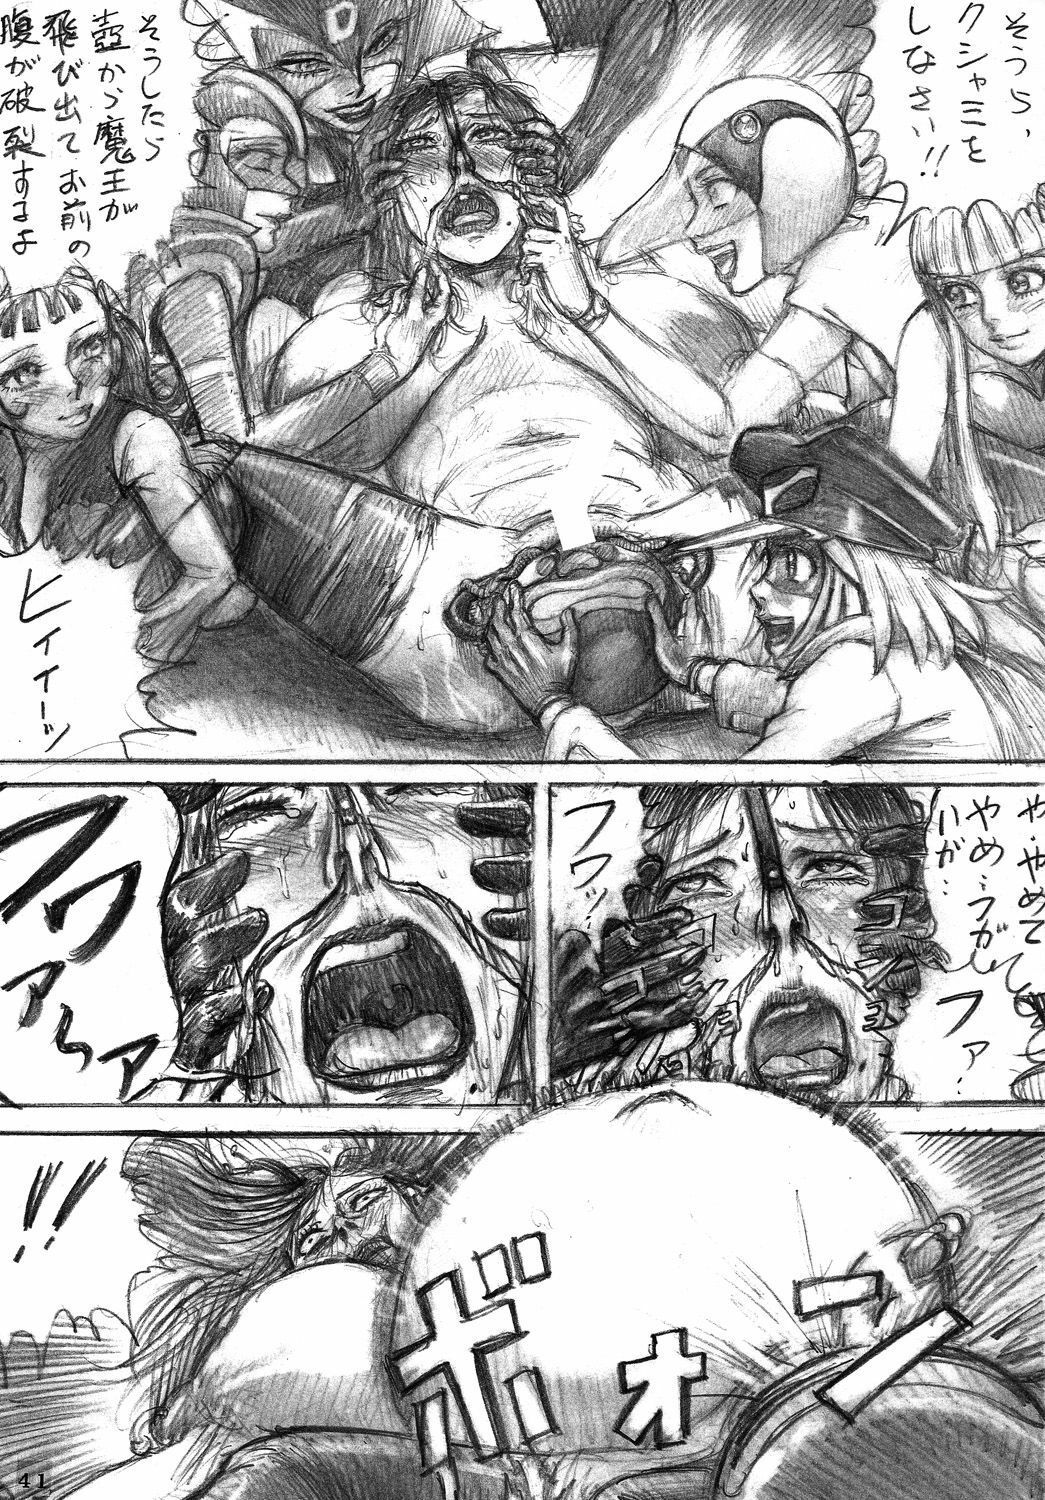 [DYNAMITE HONEY] Tatsunoko Dynamite page 40 full